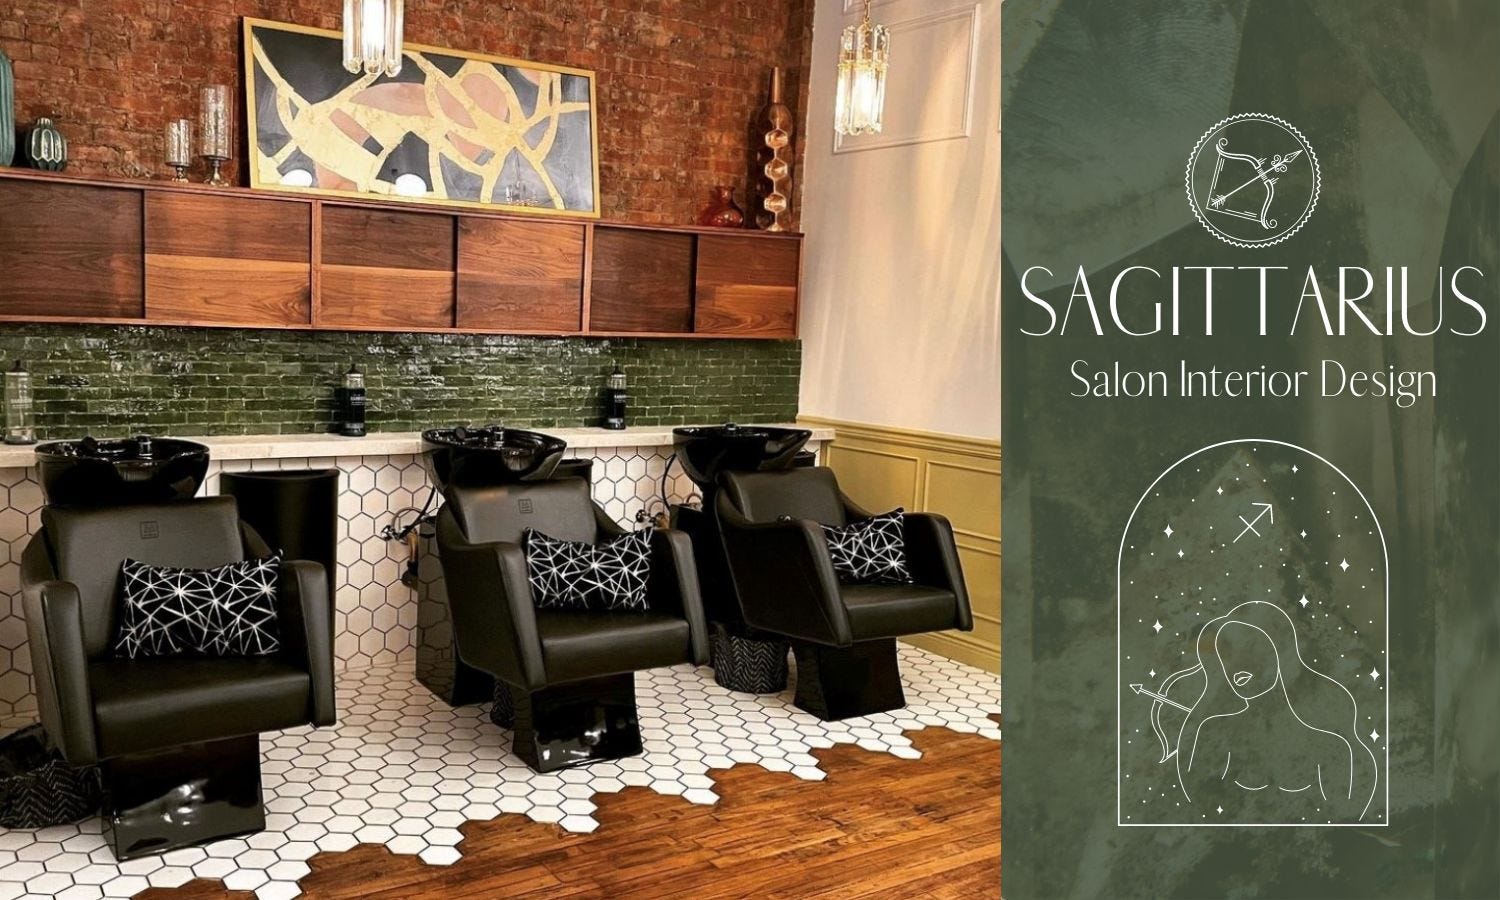 Sagittarius Salon Interior Design